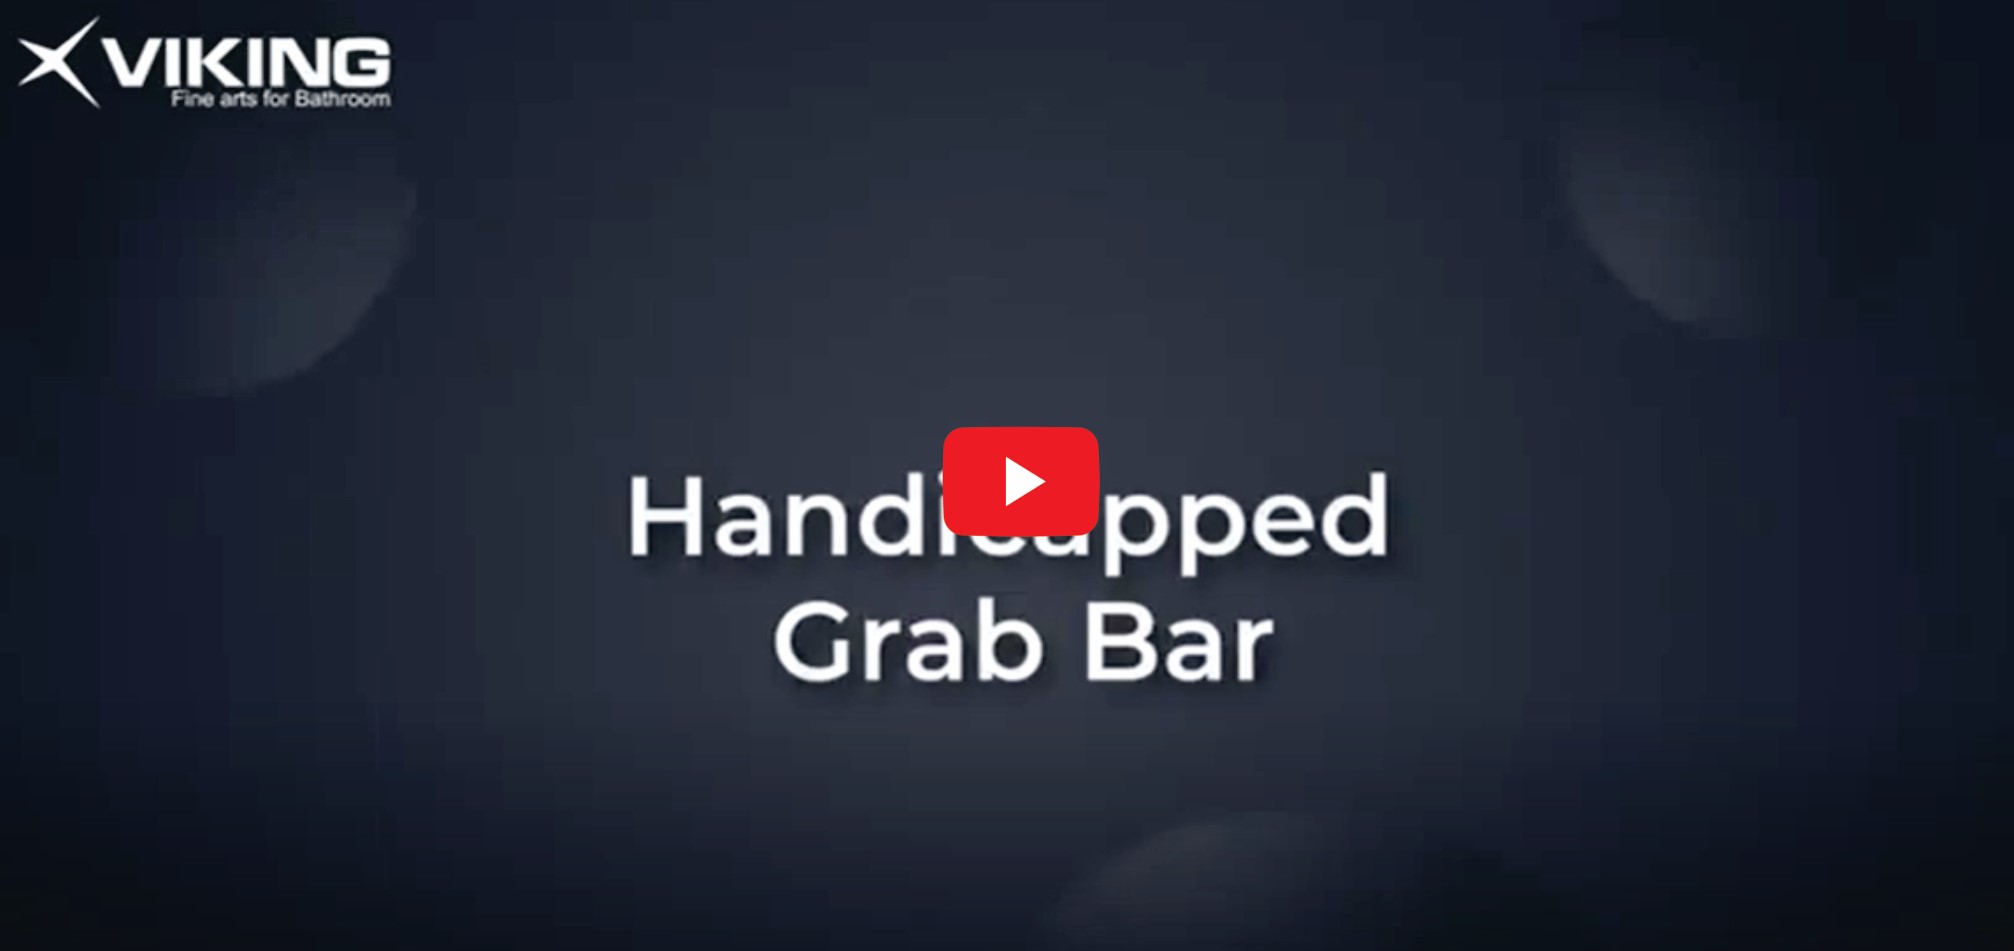 Viking Grab Bar